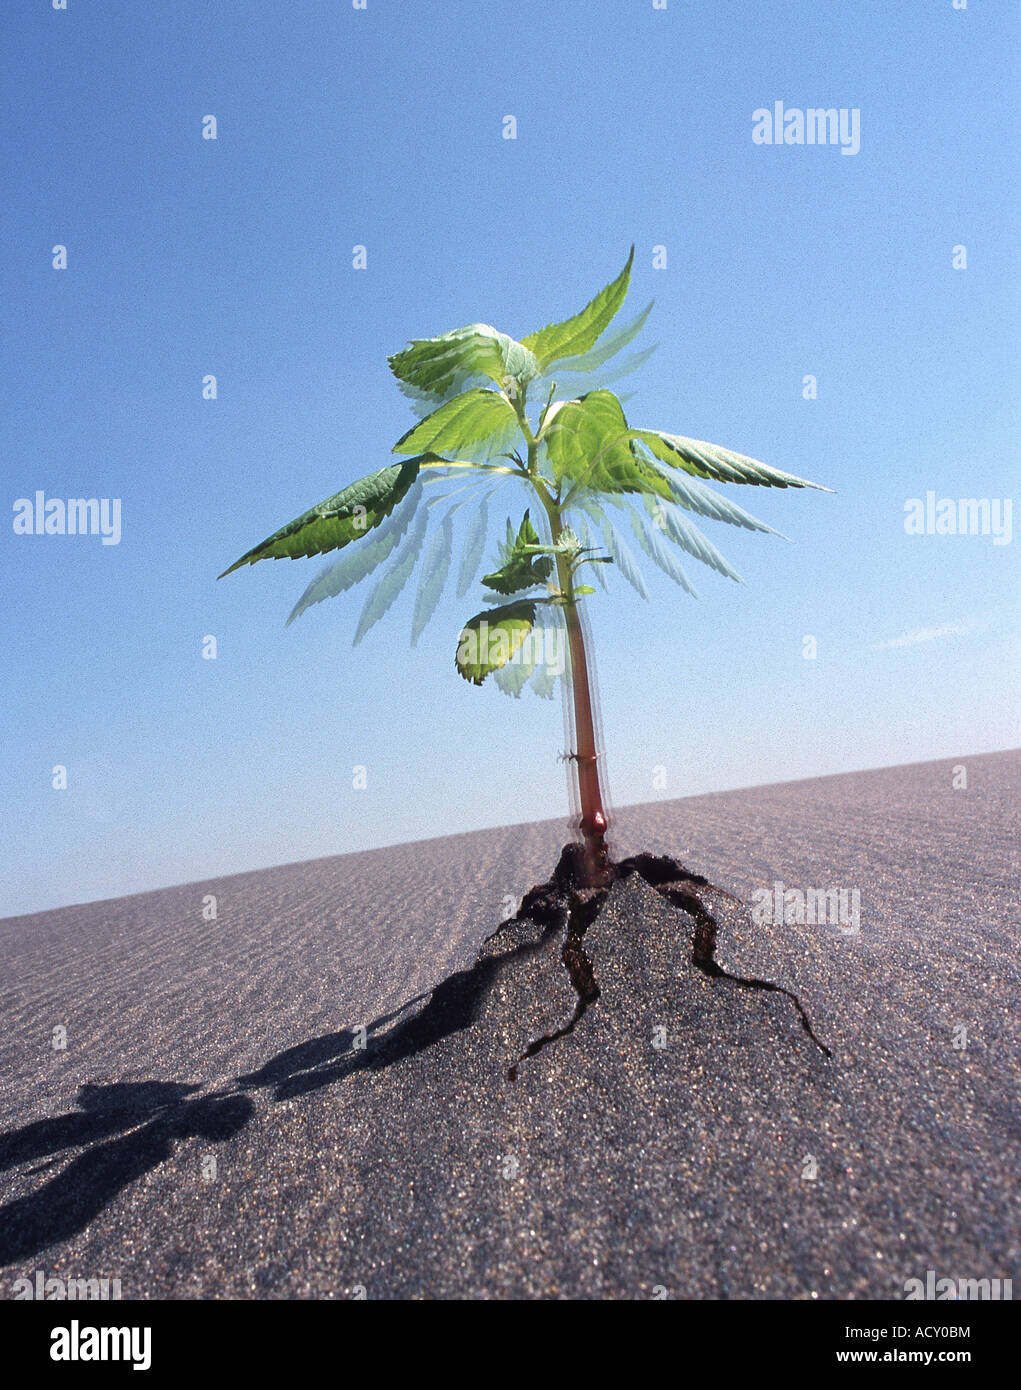 Eine Pflanze wächst schnell, bricht durch eine Asphaltdecke Stockfotografie  - Alamy